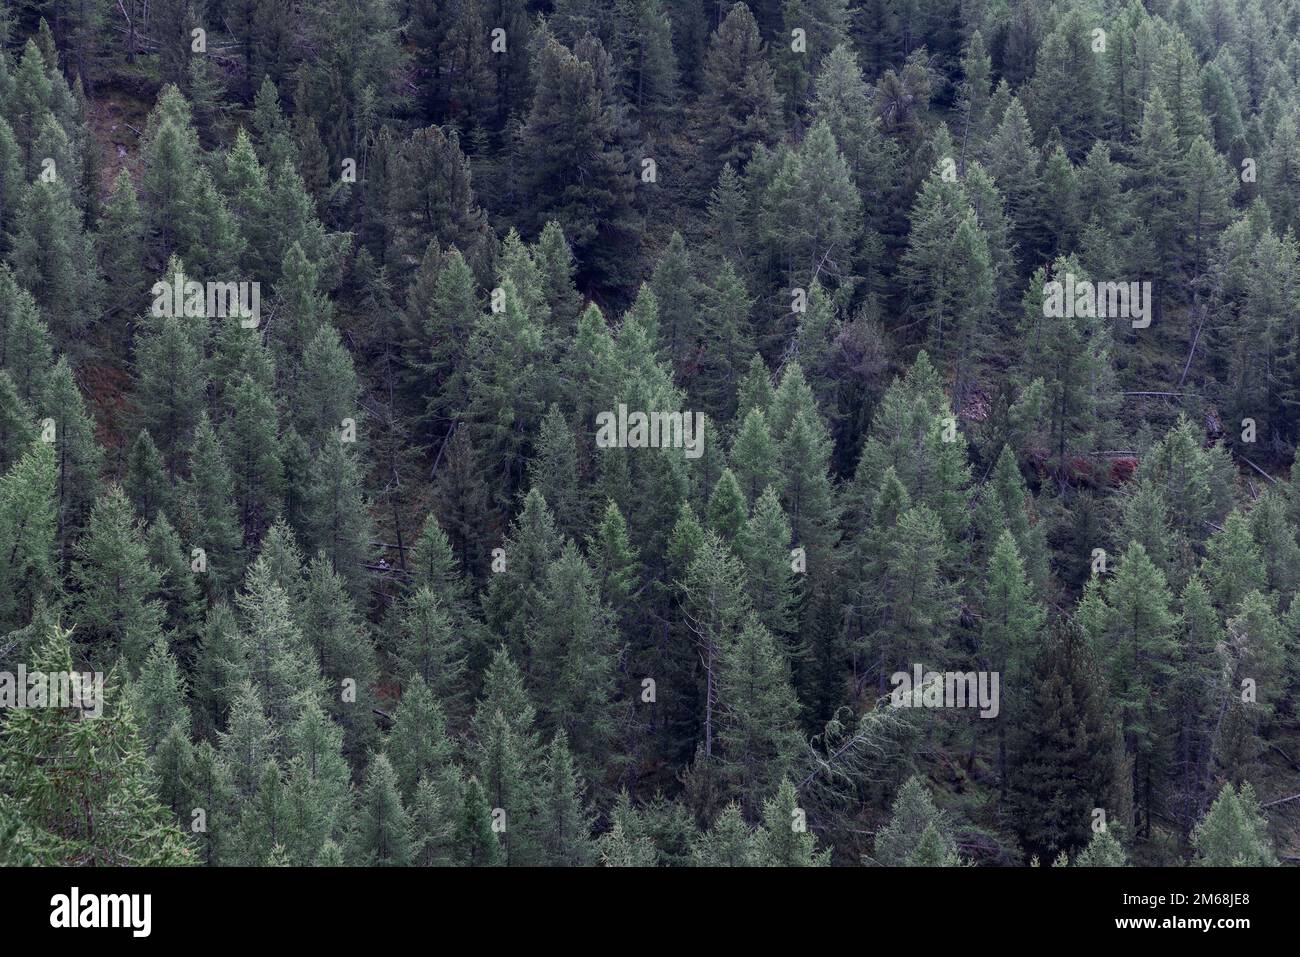 Hintergrund des dichten grünen Waldes mit stehenden und gefallenen Kiefern am Berghang, Blick von oben. Aosta-Tal, Italien Stockfoto